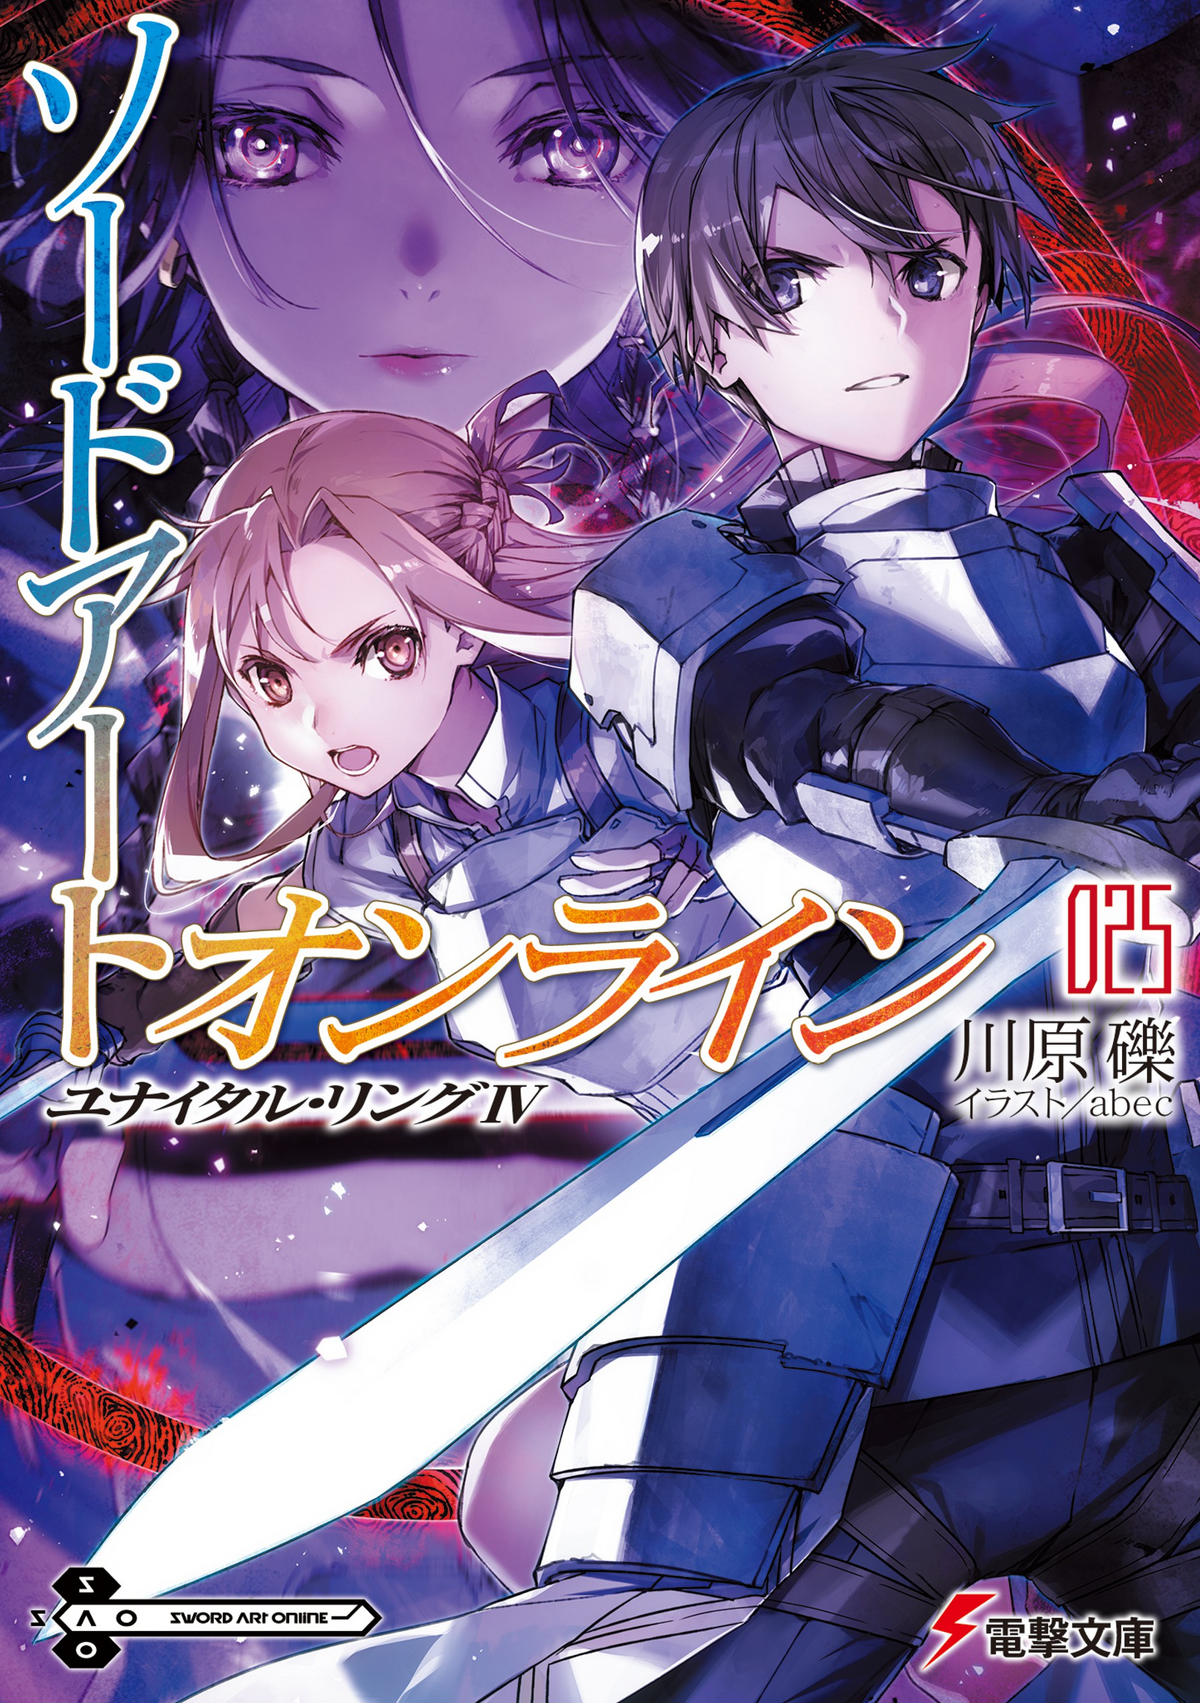 Sword Art Online progressive nº 01 (novela) (Manga Novela